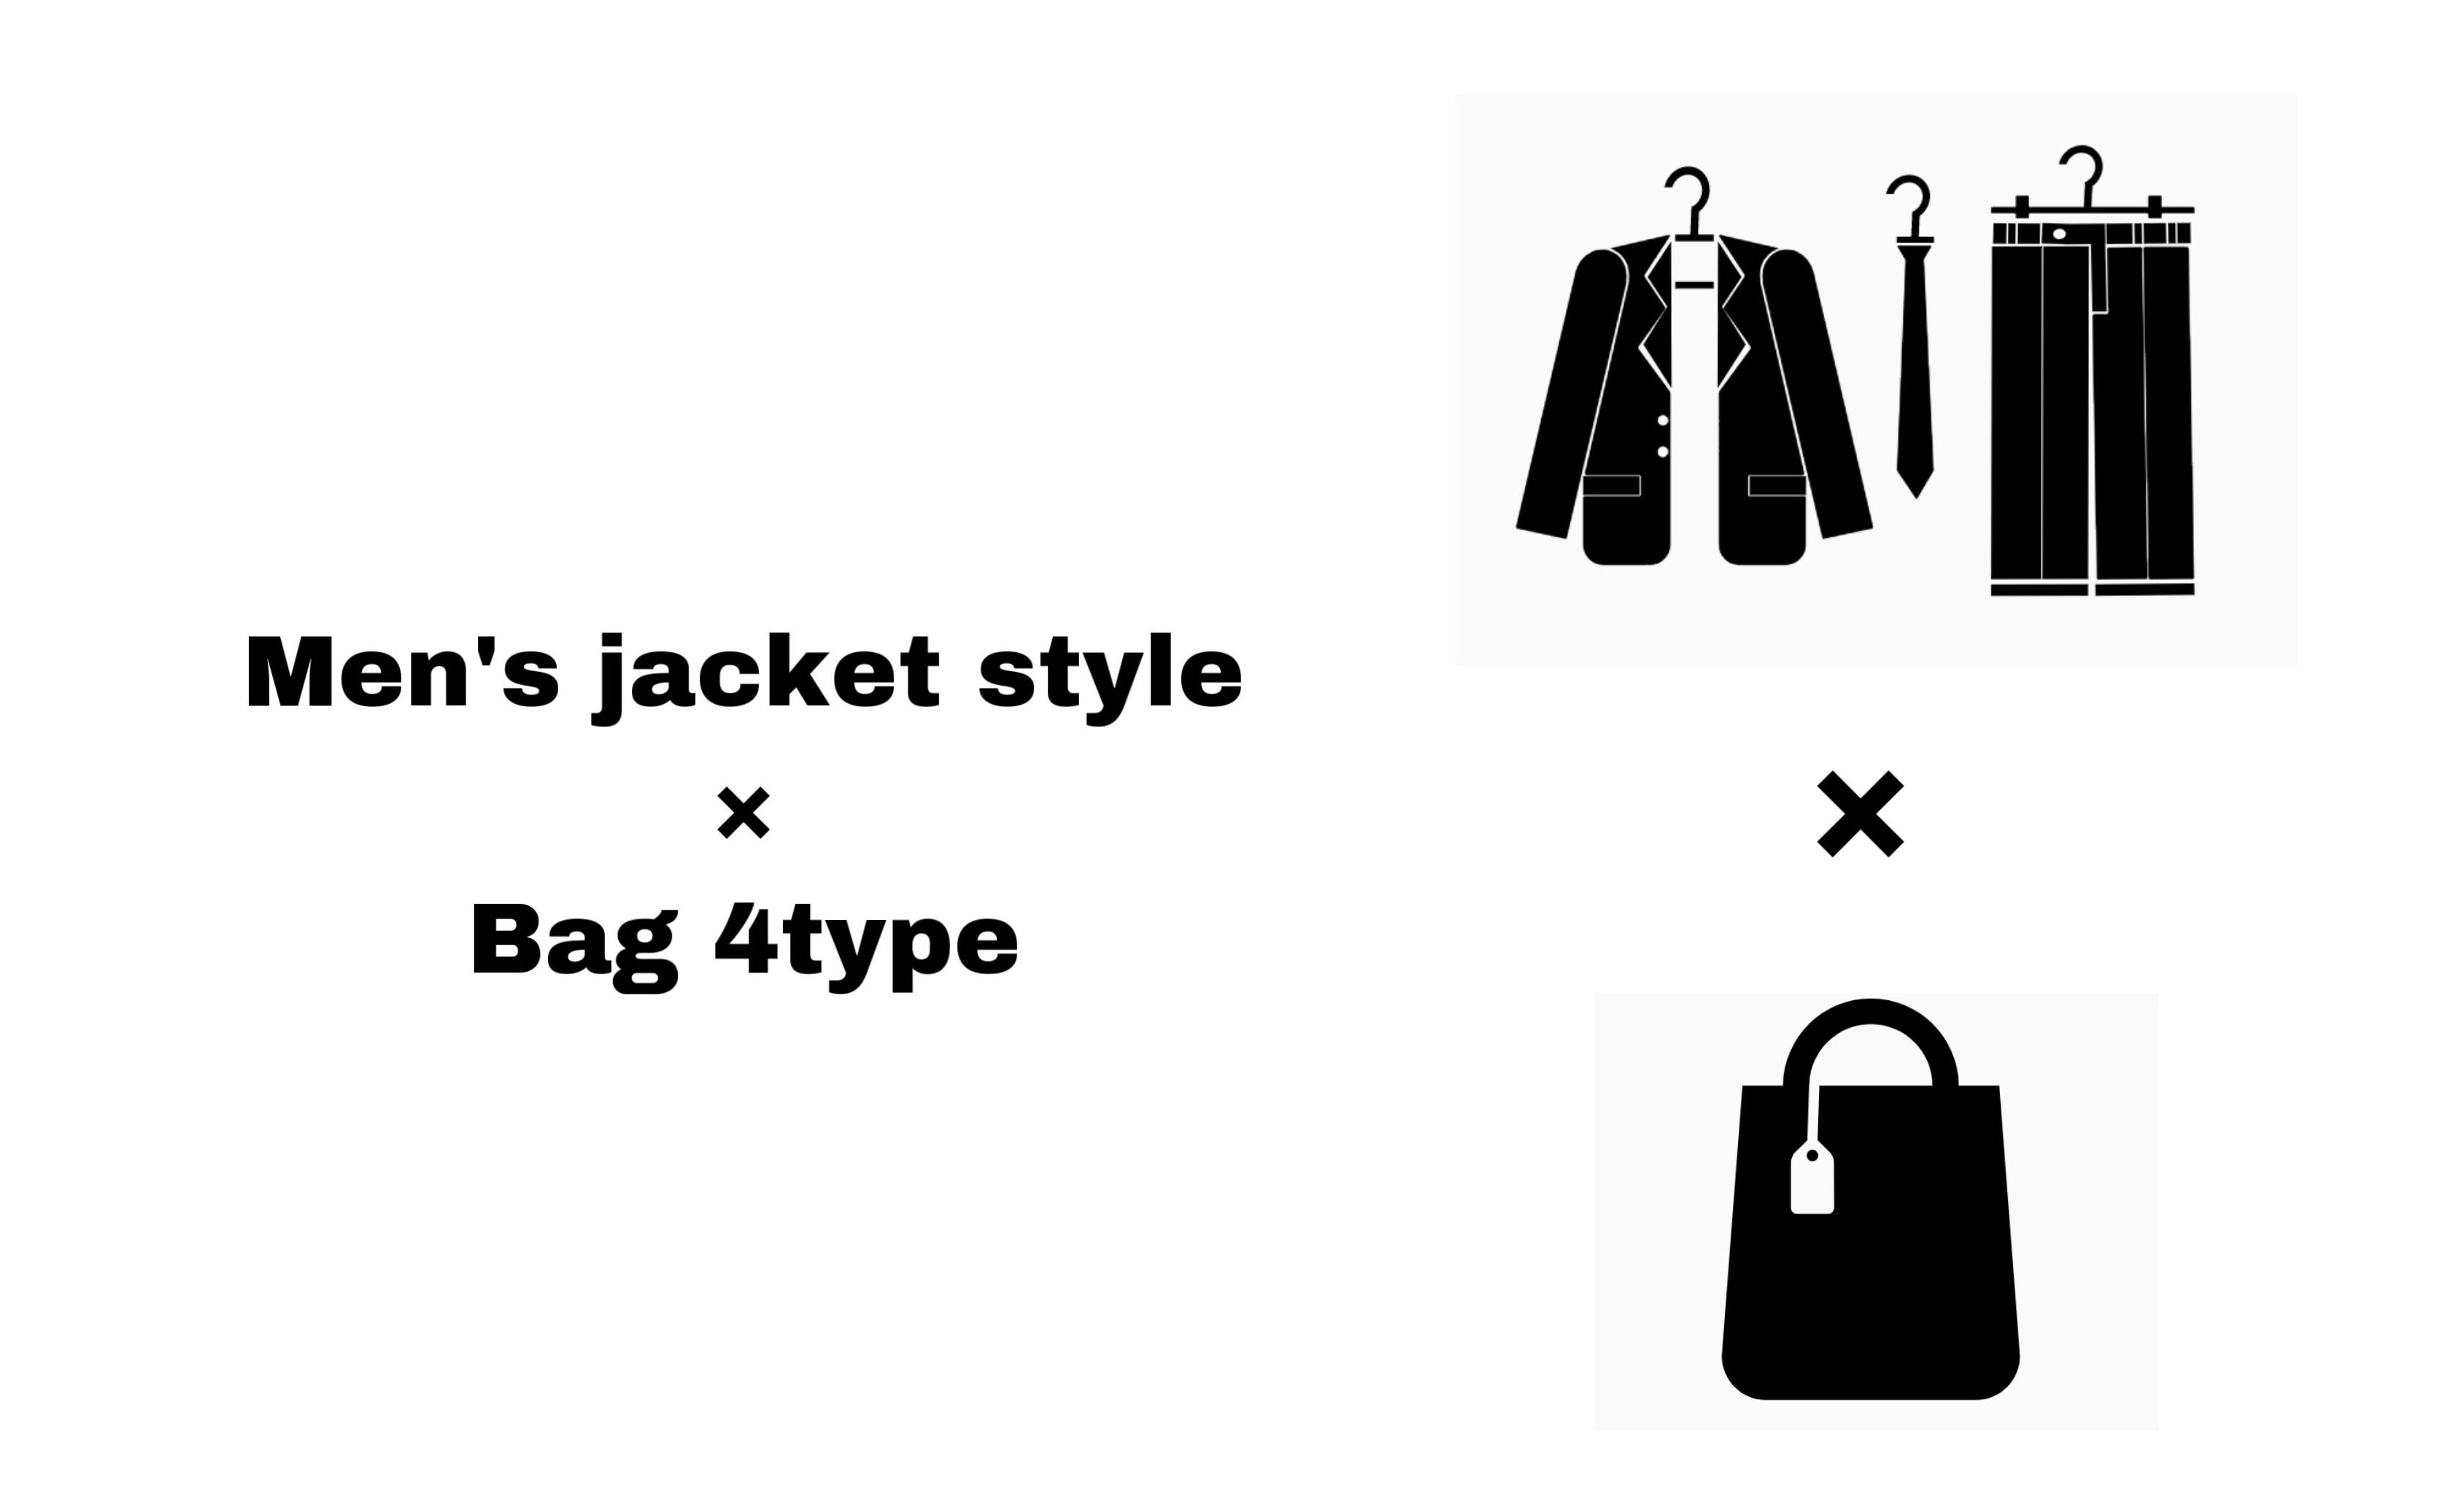 ジャケットに合うメンズバッグ4タイプを厳選 オンオフ両方で使えるバッグをご紹介 Small 背が低いからこそオシャレになれるブログ